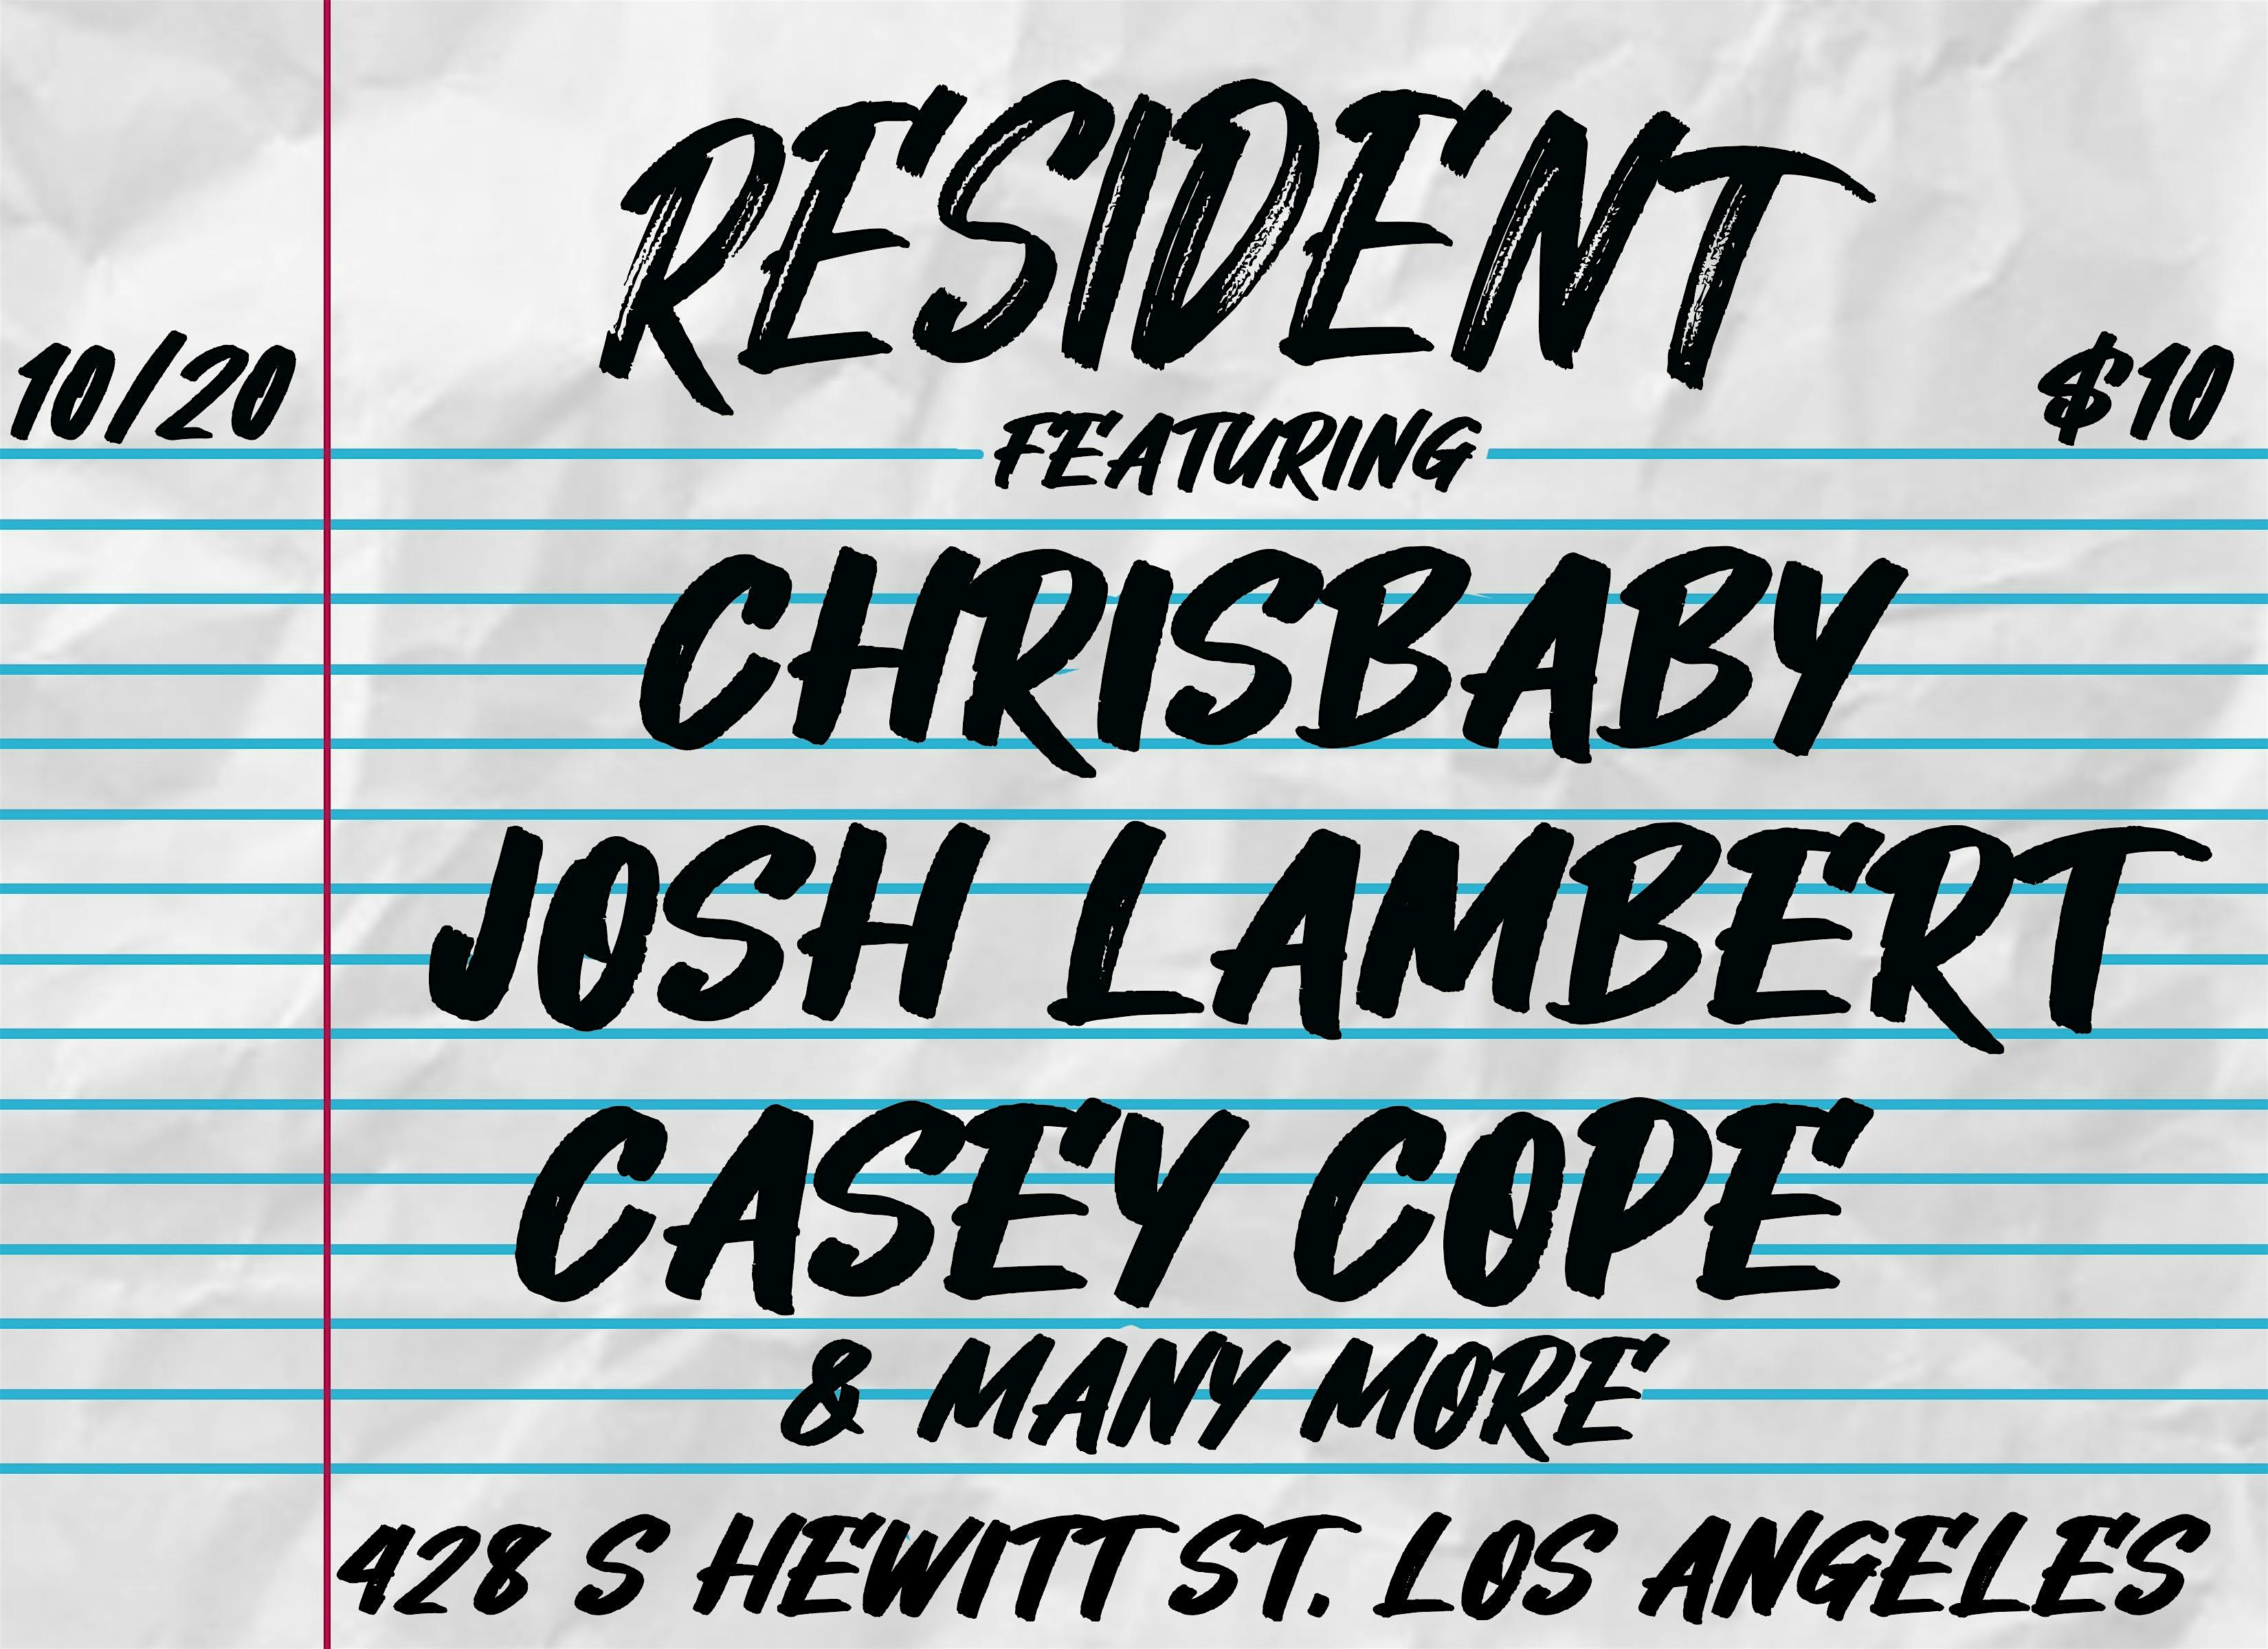 Chrisbaby, Josh Lambert, Casey Code